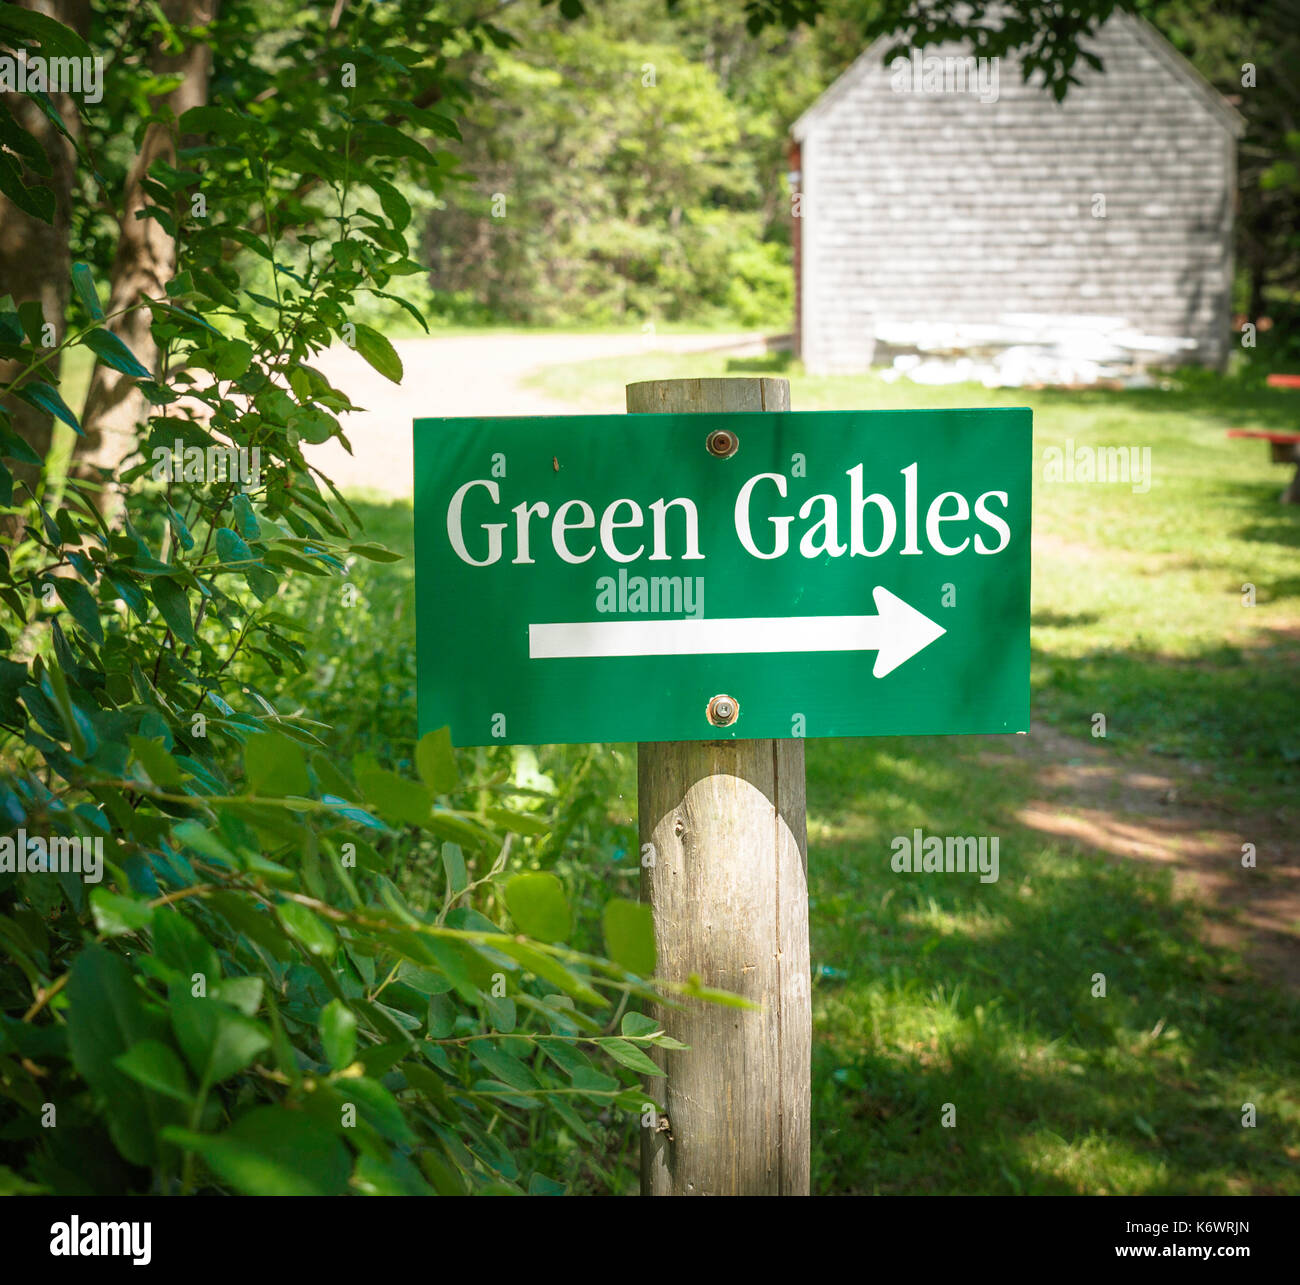 Signer avec la flèche à Green Gables, accueil de personnage, Anne of Green Gables, écrite par l'auteur L.M. Montgomery. Banque D'Images